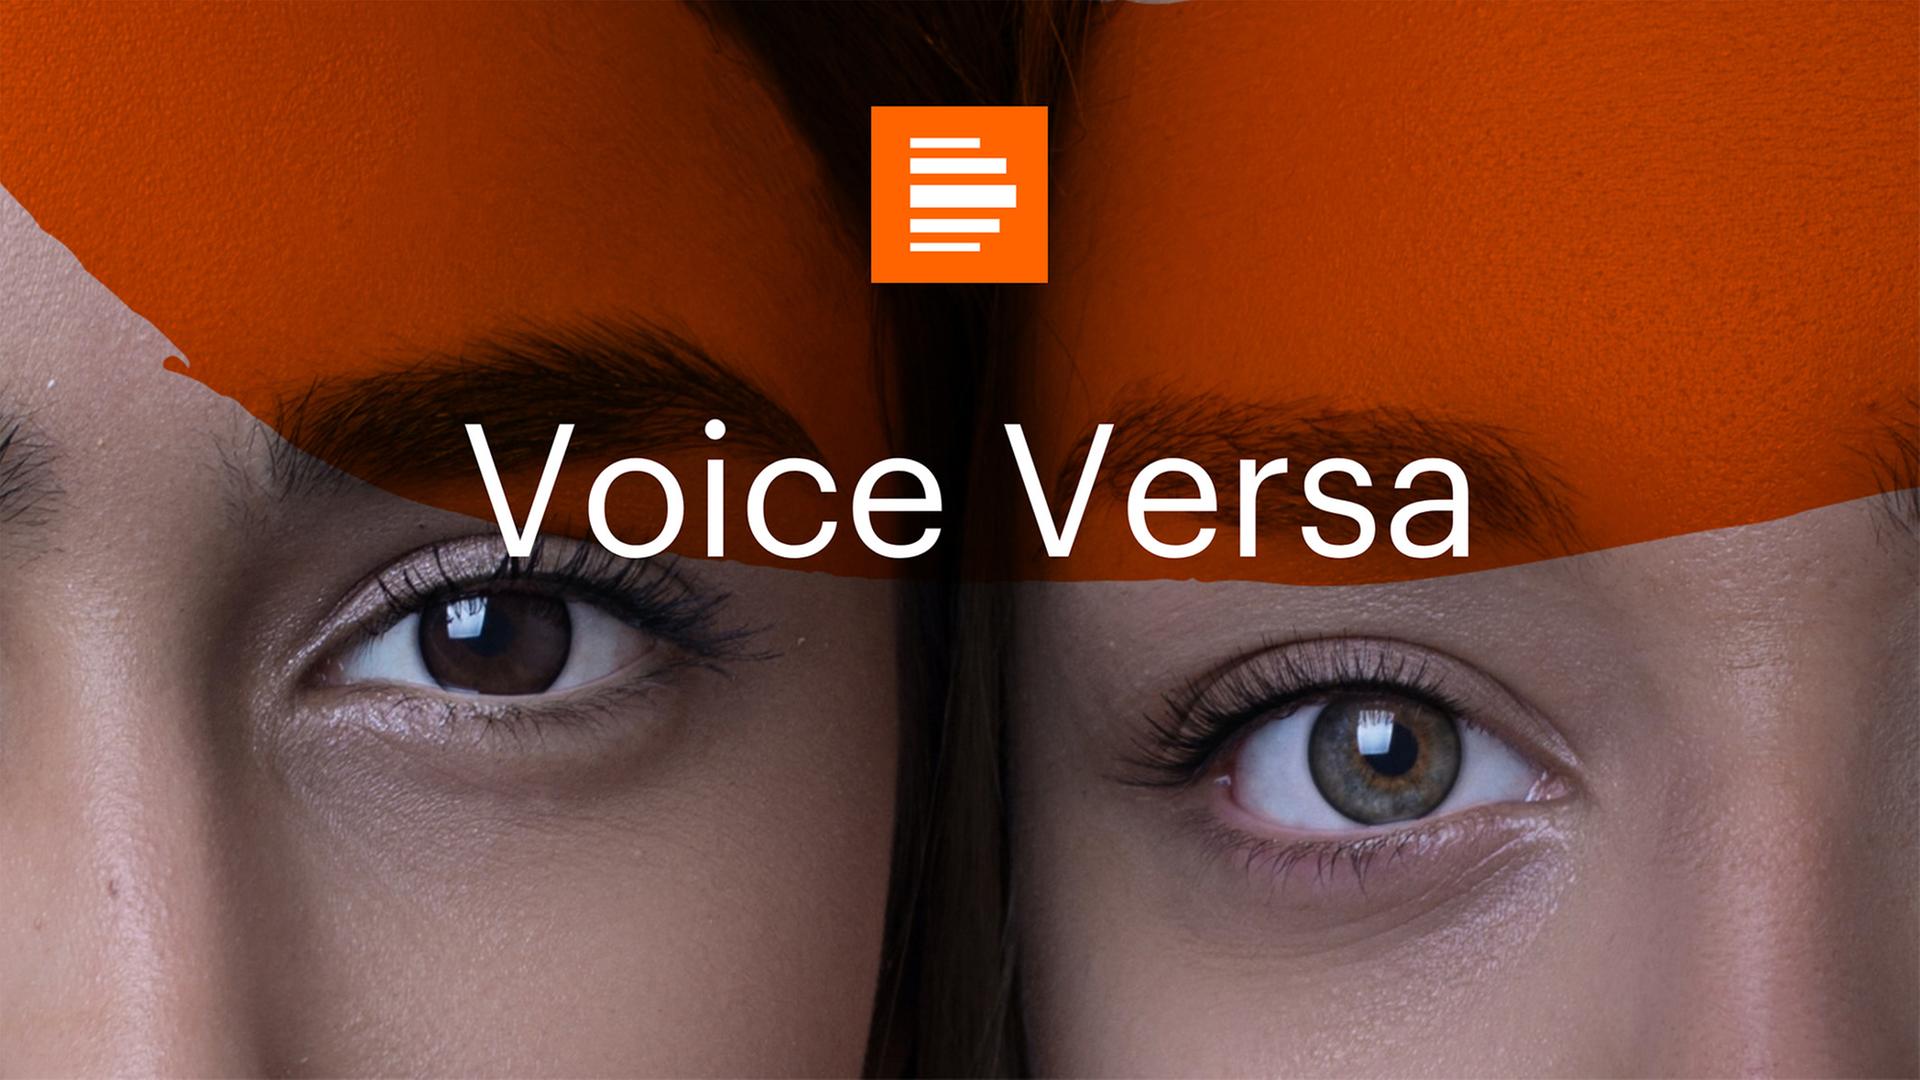 Das Podcast-Logo von "Voice Versa" zeigt zwei Gesichter nebeneinander im Anschnitt, sodass nur jeweils ein Auge zu sehen ist. Im Vordergrund ist ein halbtransparenter Pinselstrich in Orange zu sehen, darüber ist "Voice Versa" zu lesen.